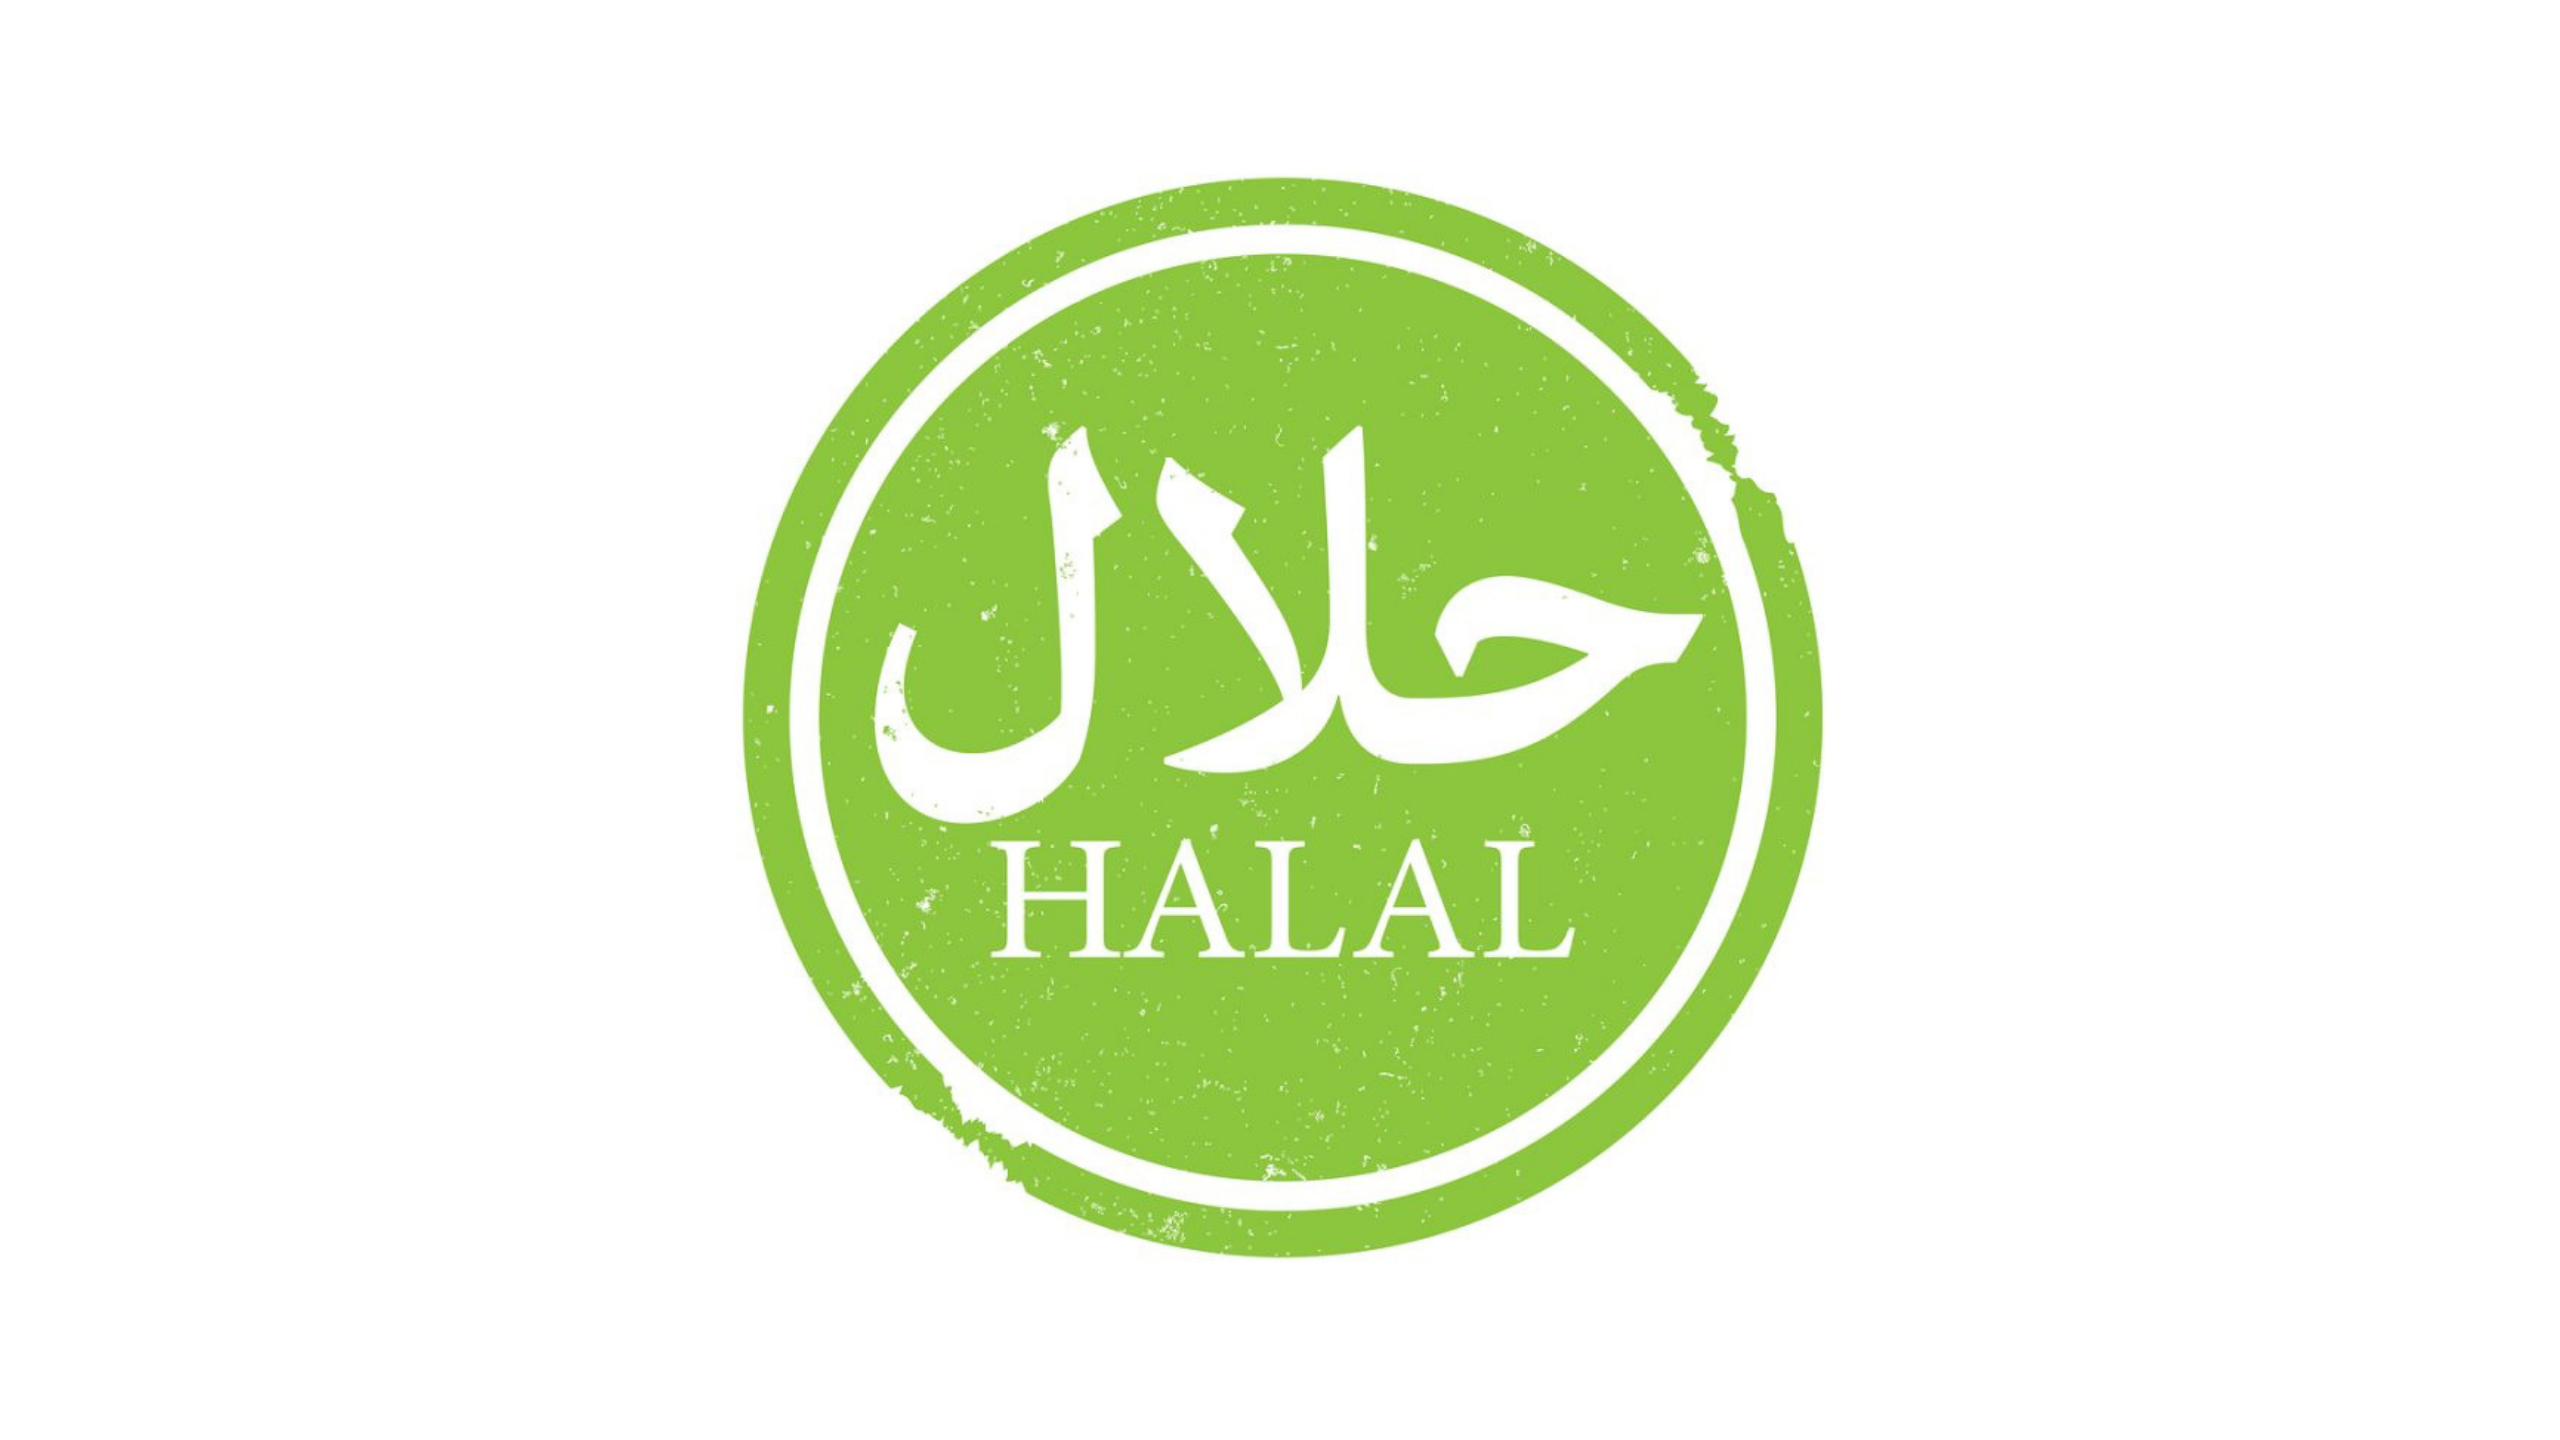 Татарский халяль. Халяль. Halal логотип. Символ Халяль. Халяль баннер.